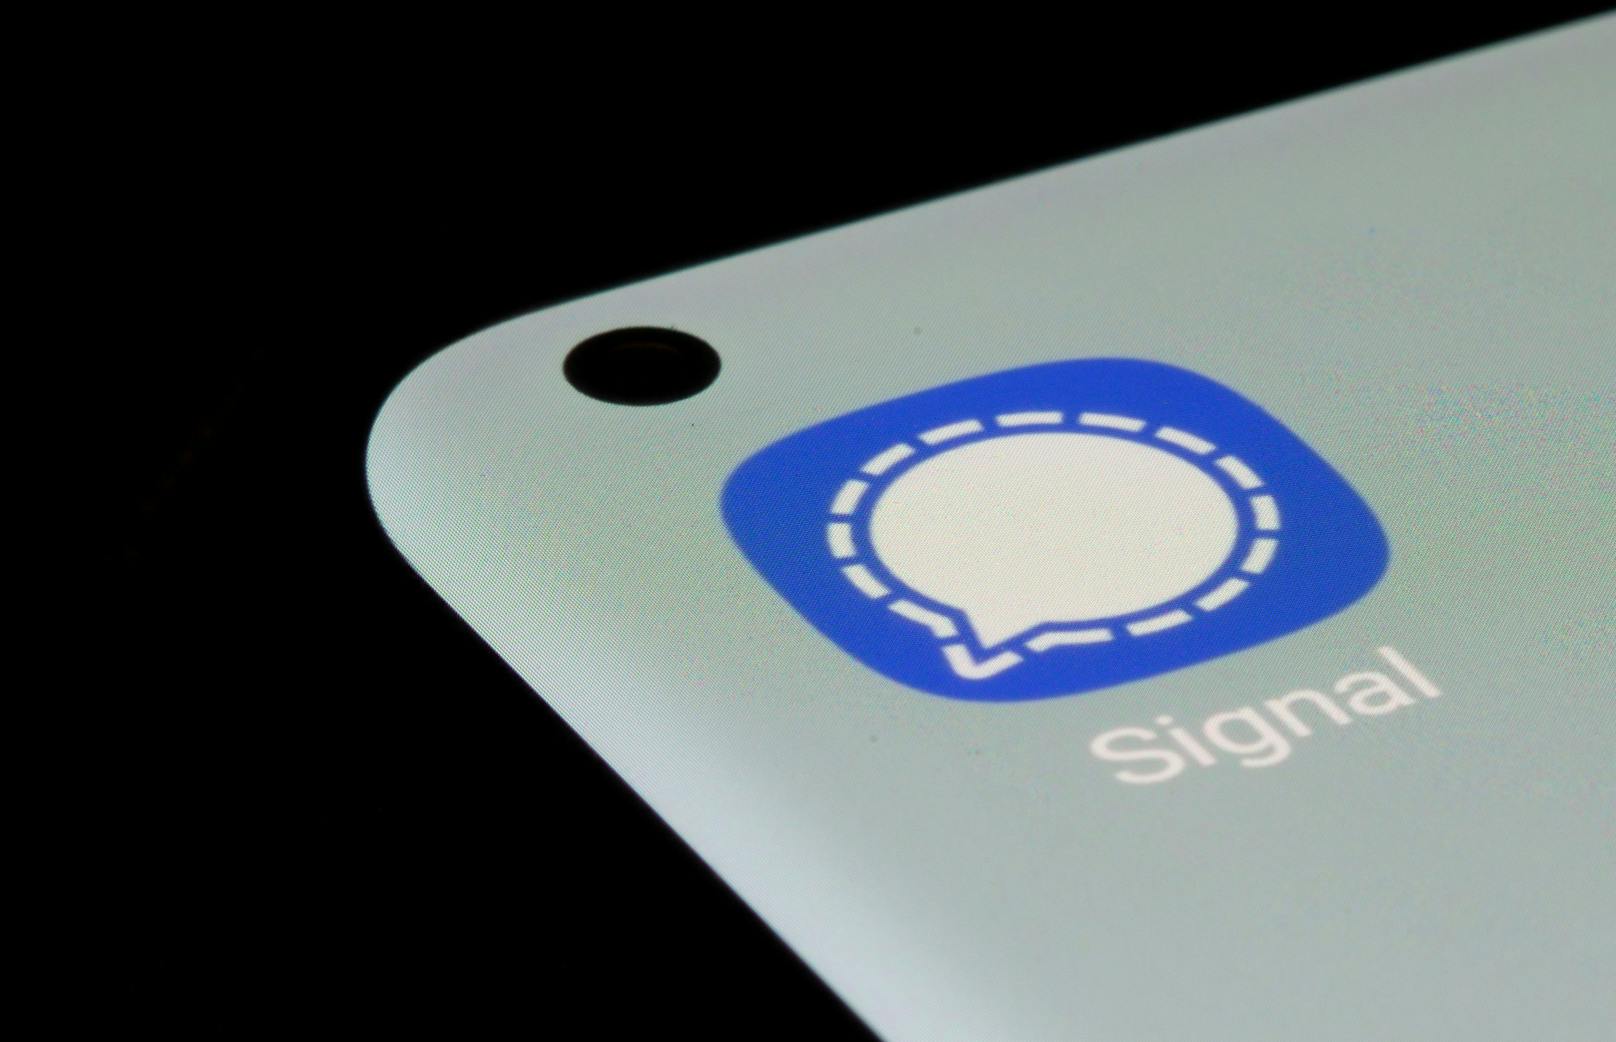 Der Messenger Signal veröffentlicht seine Datenschutz-Details im Google Play Store.